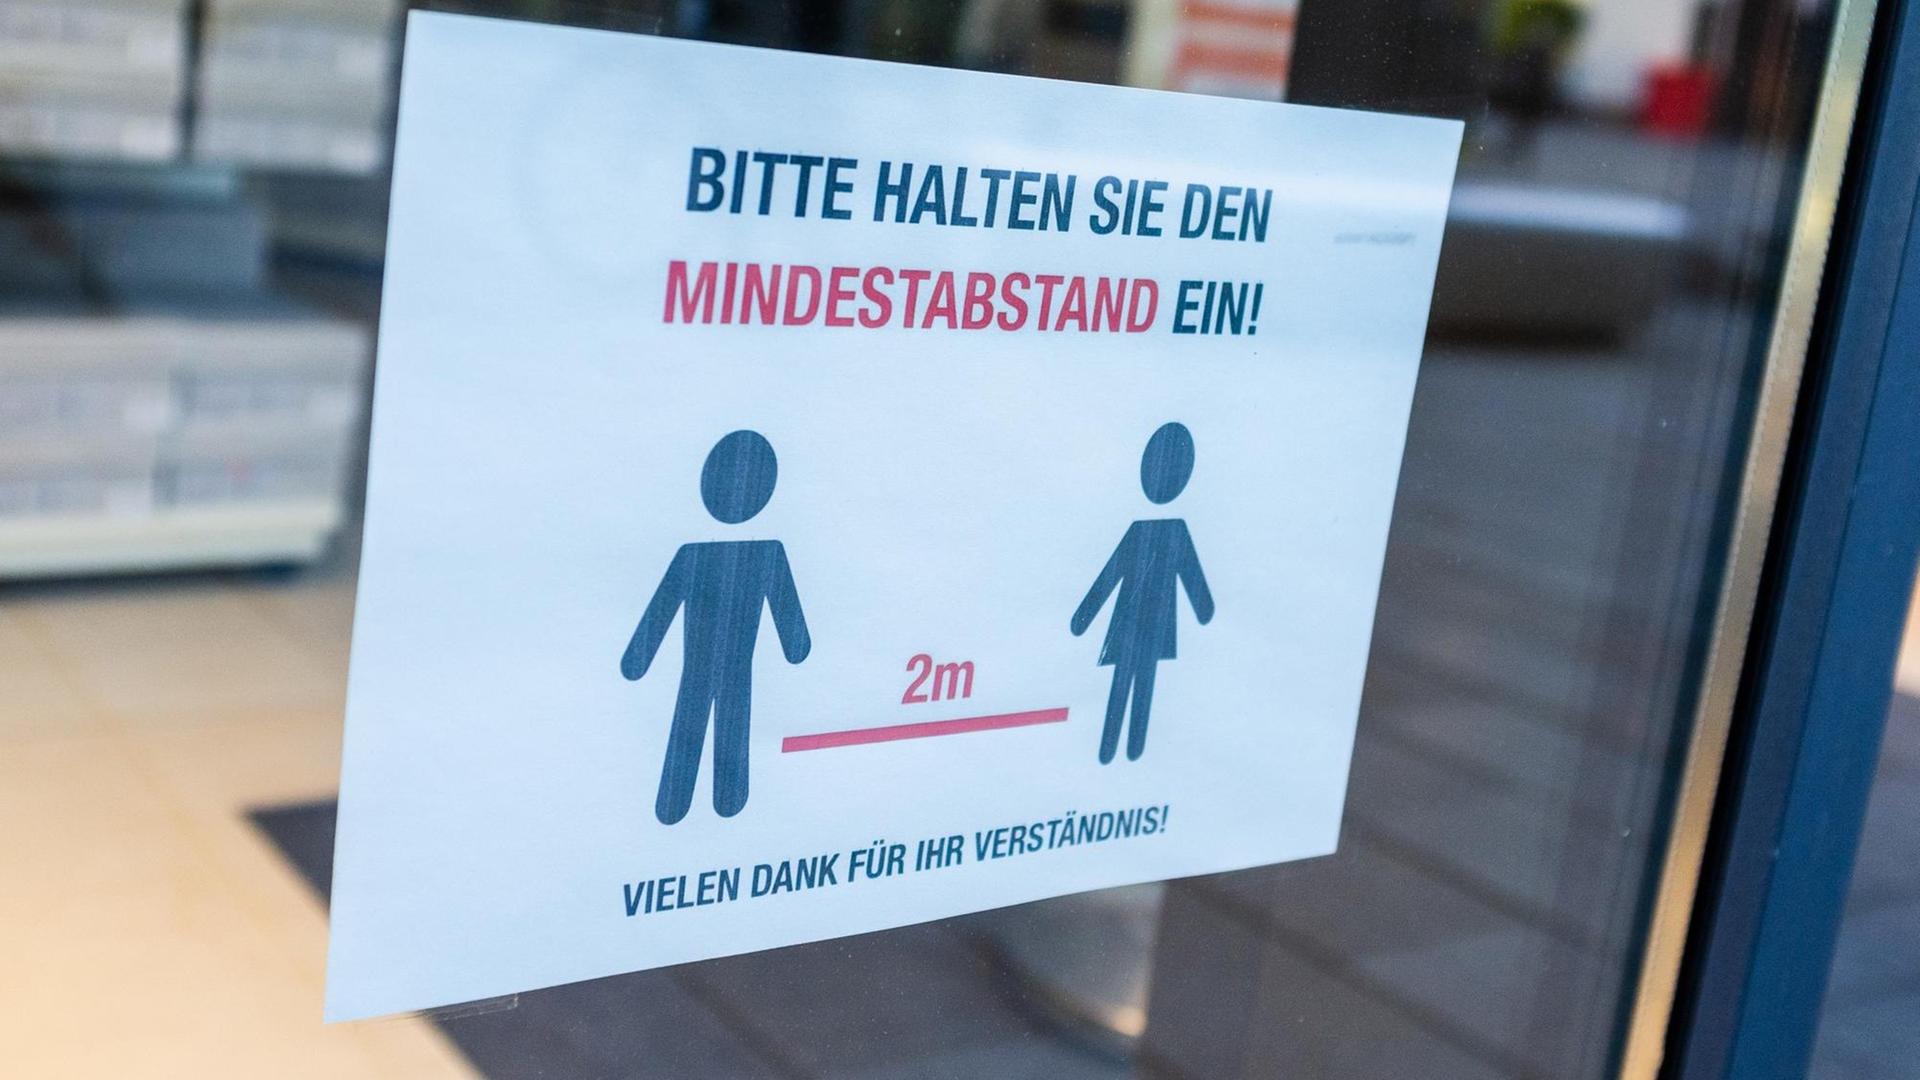 Hinweisschild an einem Laden in der Leipziger Innenstadt, dass man einen Mindestabstand von 2 Metern einhalten soll.